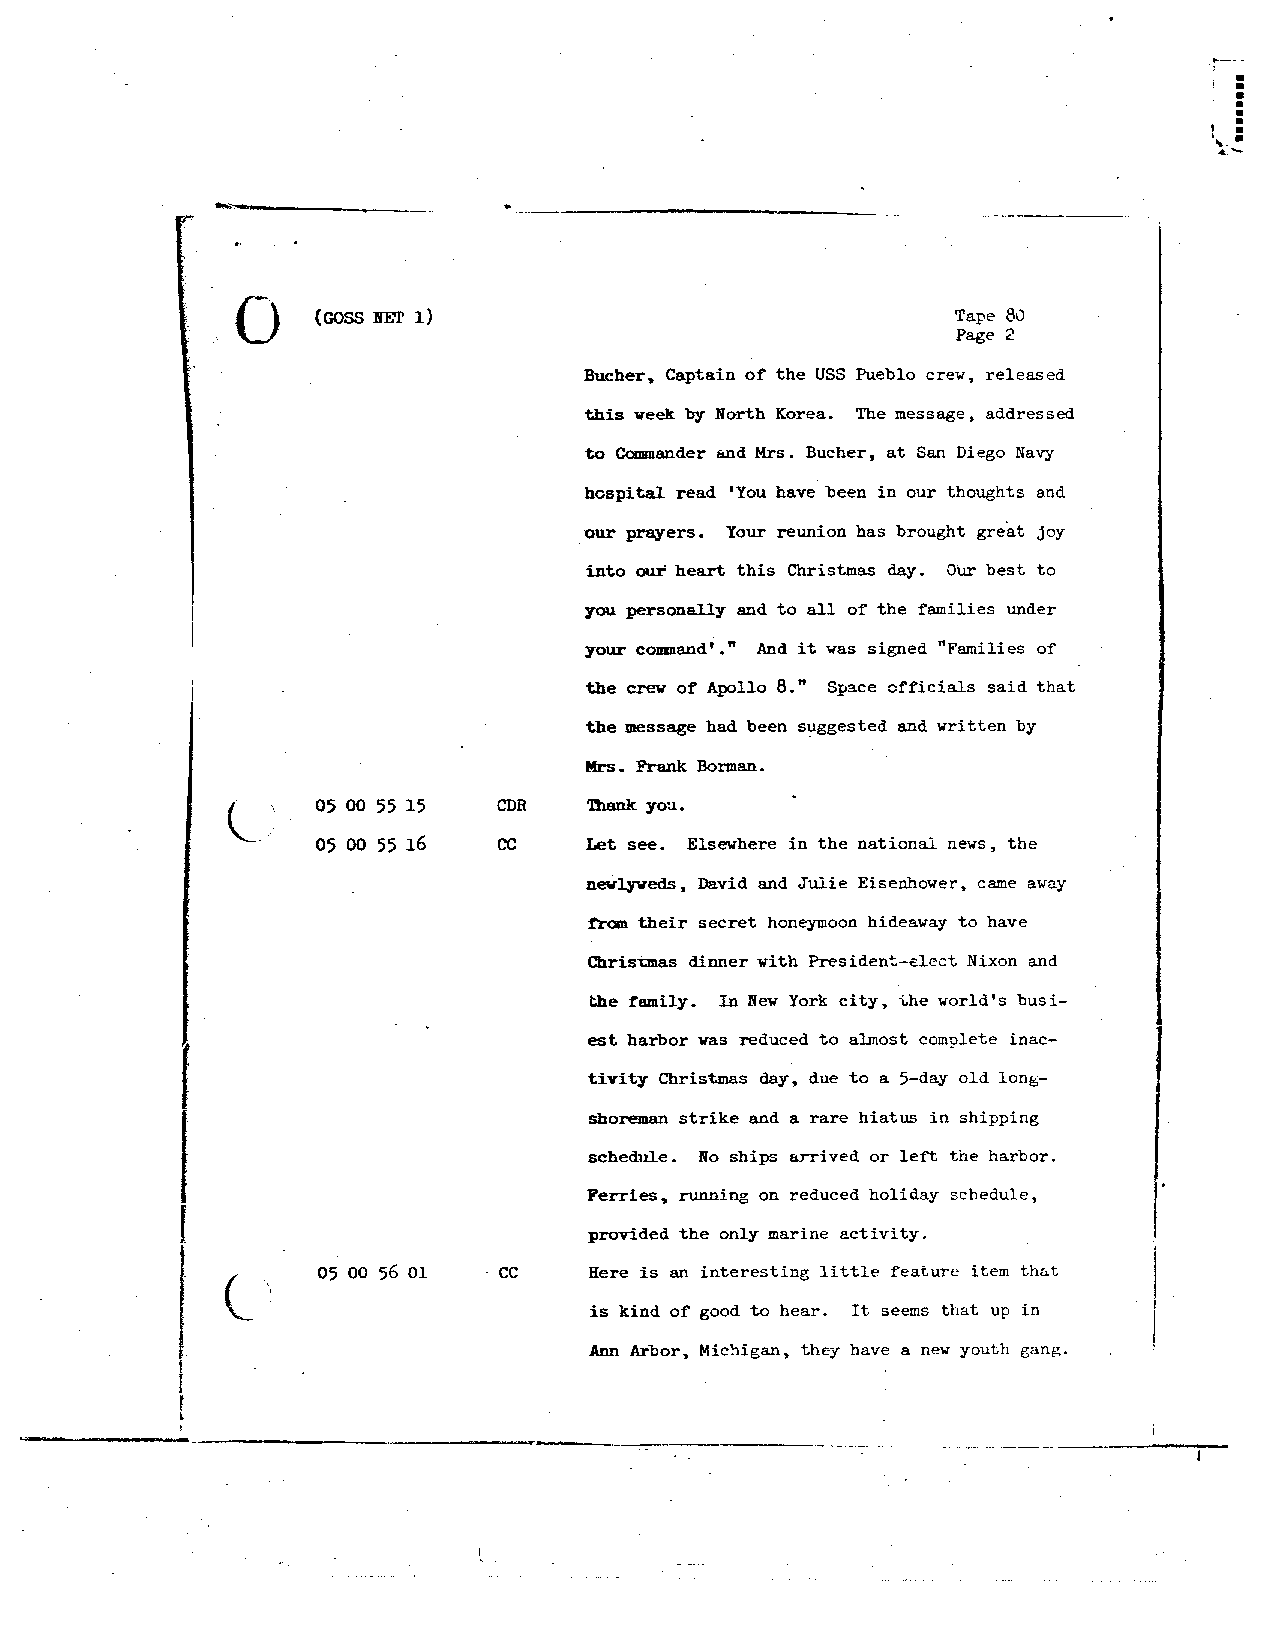 Page 659 of Apollo 8’s original transcript